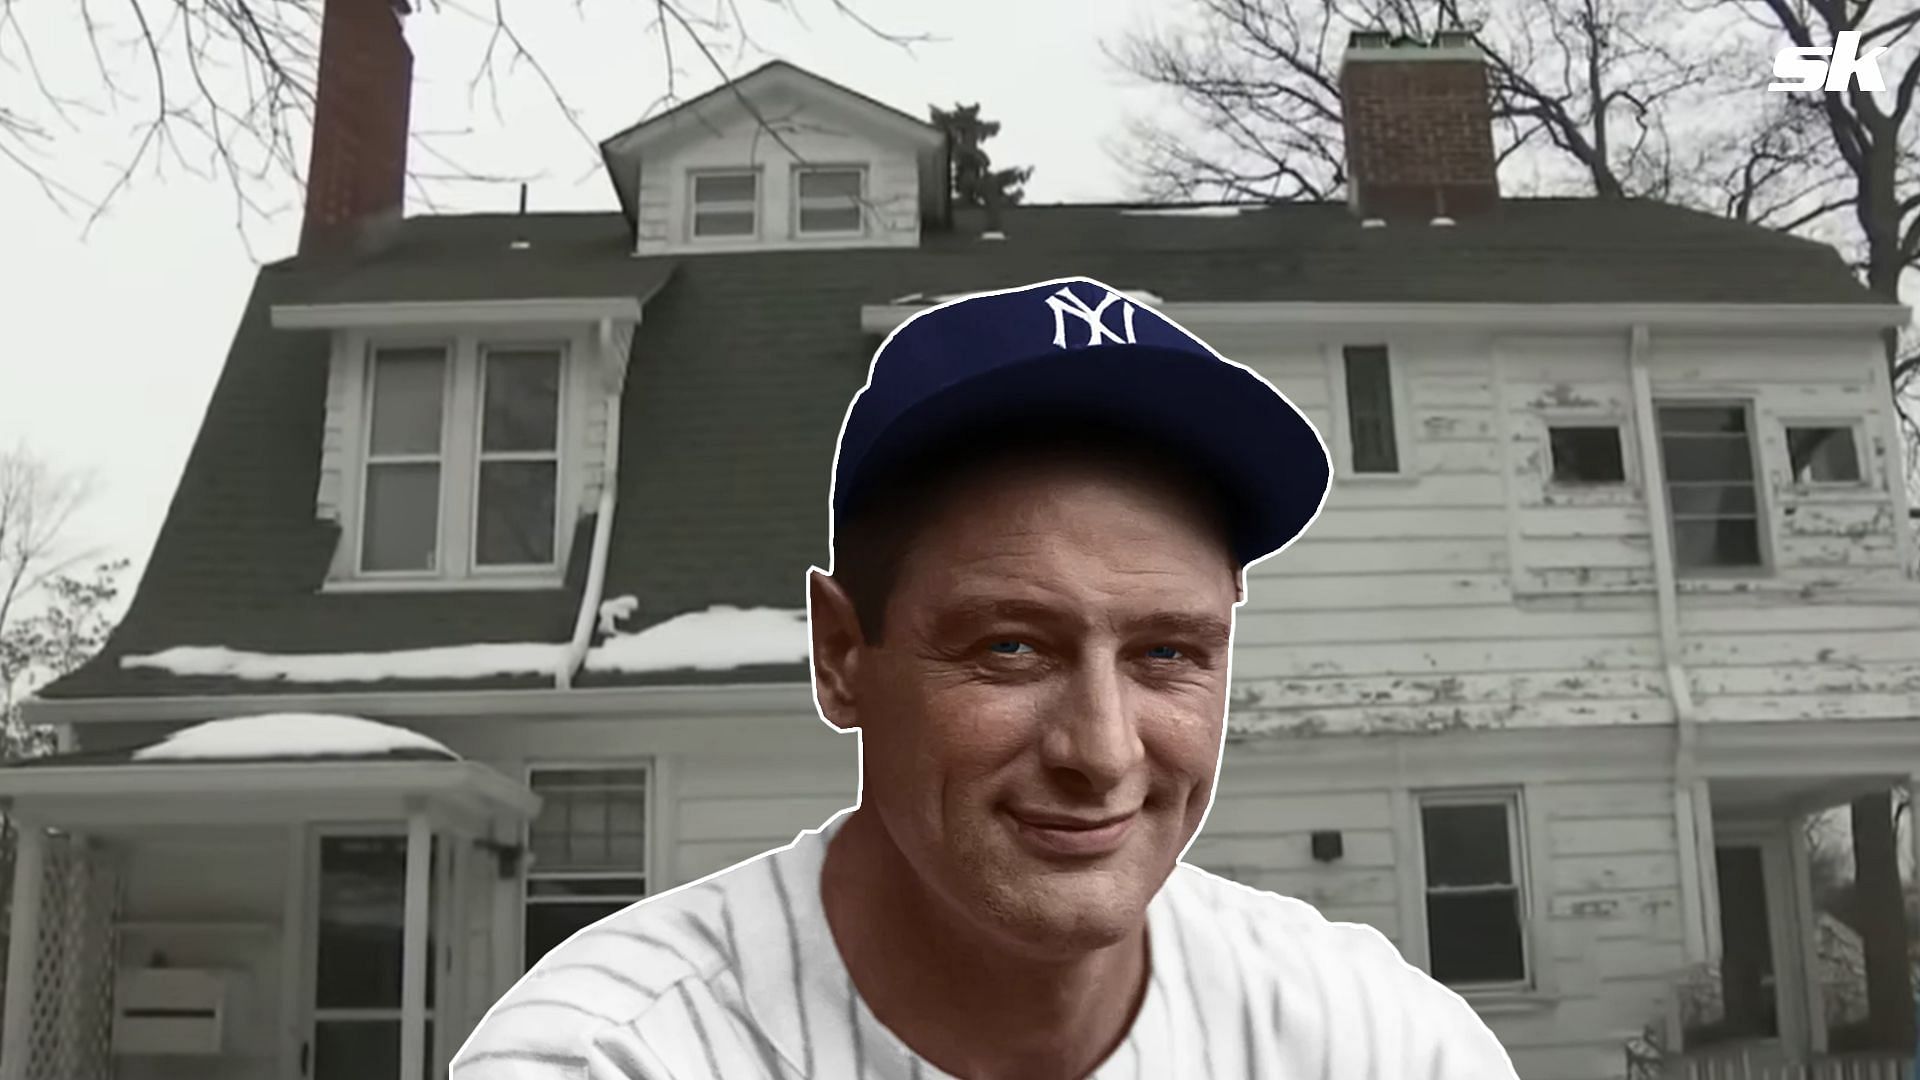 Inside MLB great Lou Gehrig